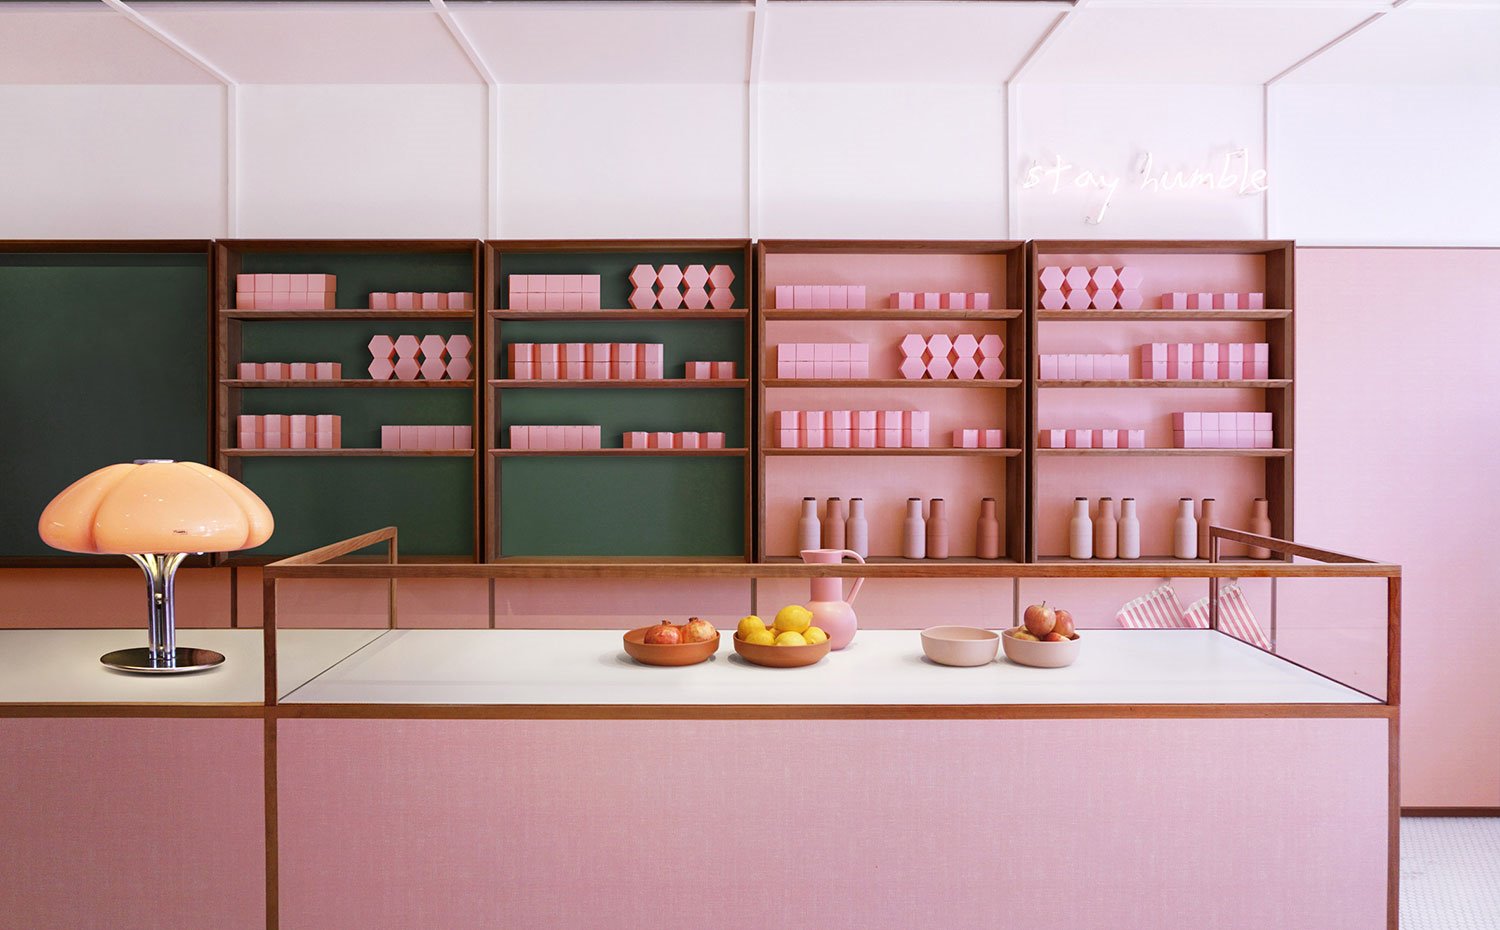 Mostrador en rosa, lámpara de sobremesa con pantalla de cristal, bols con fruta, estanterías con frente verde y rosa, embases en rosa